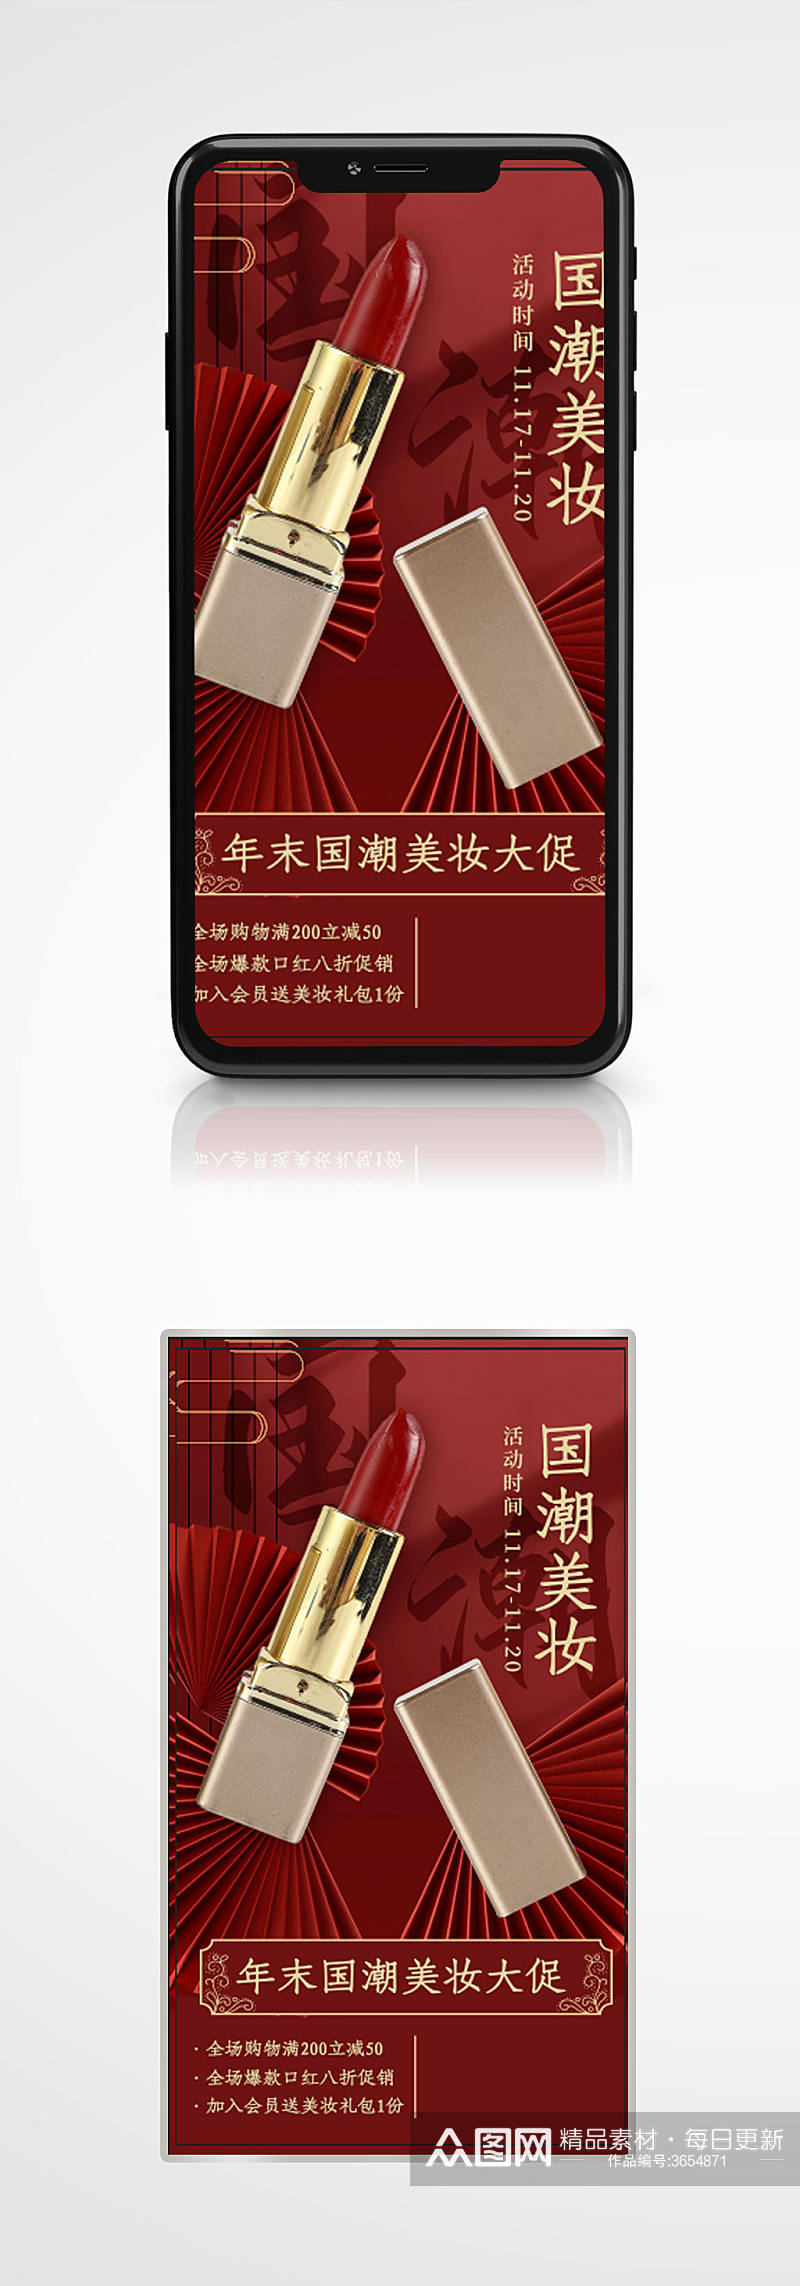 国潮风美妆促销手机海报口红护肤素材